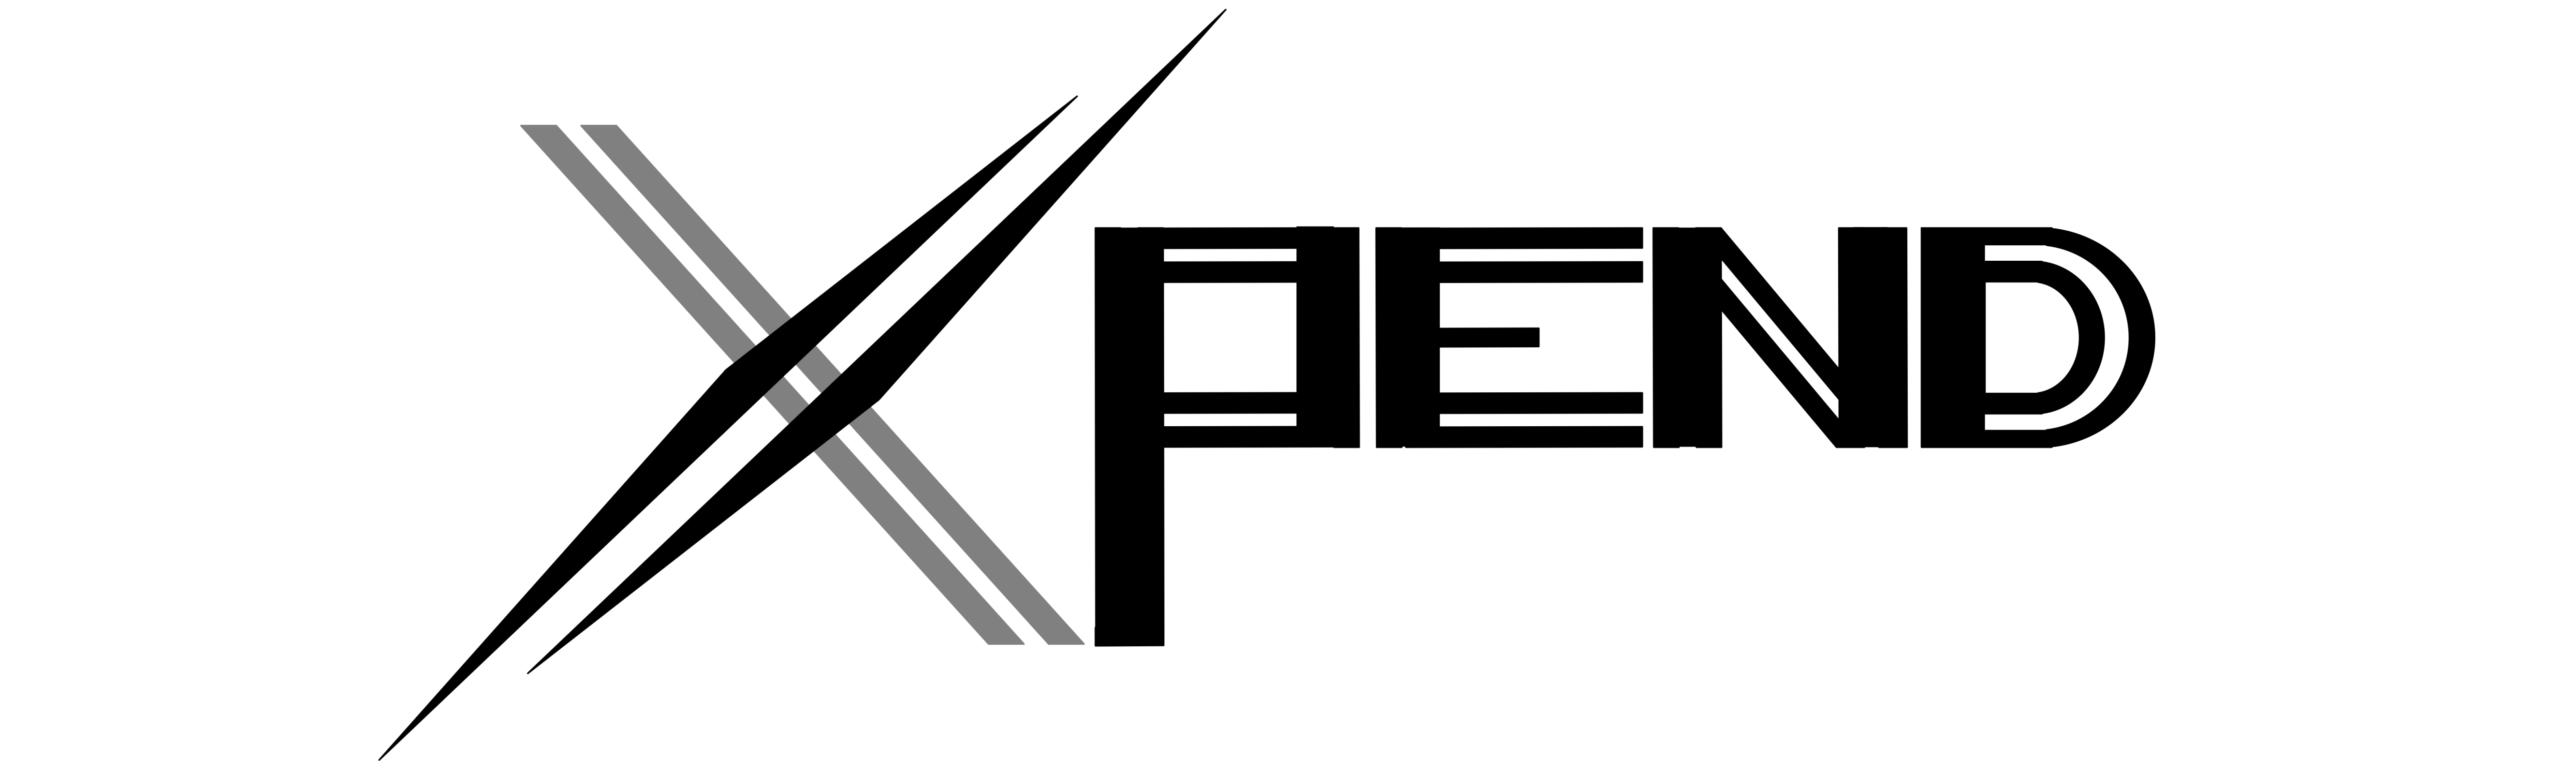 Xpend Logo